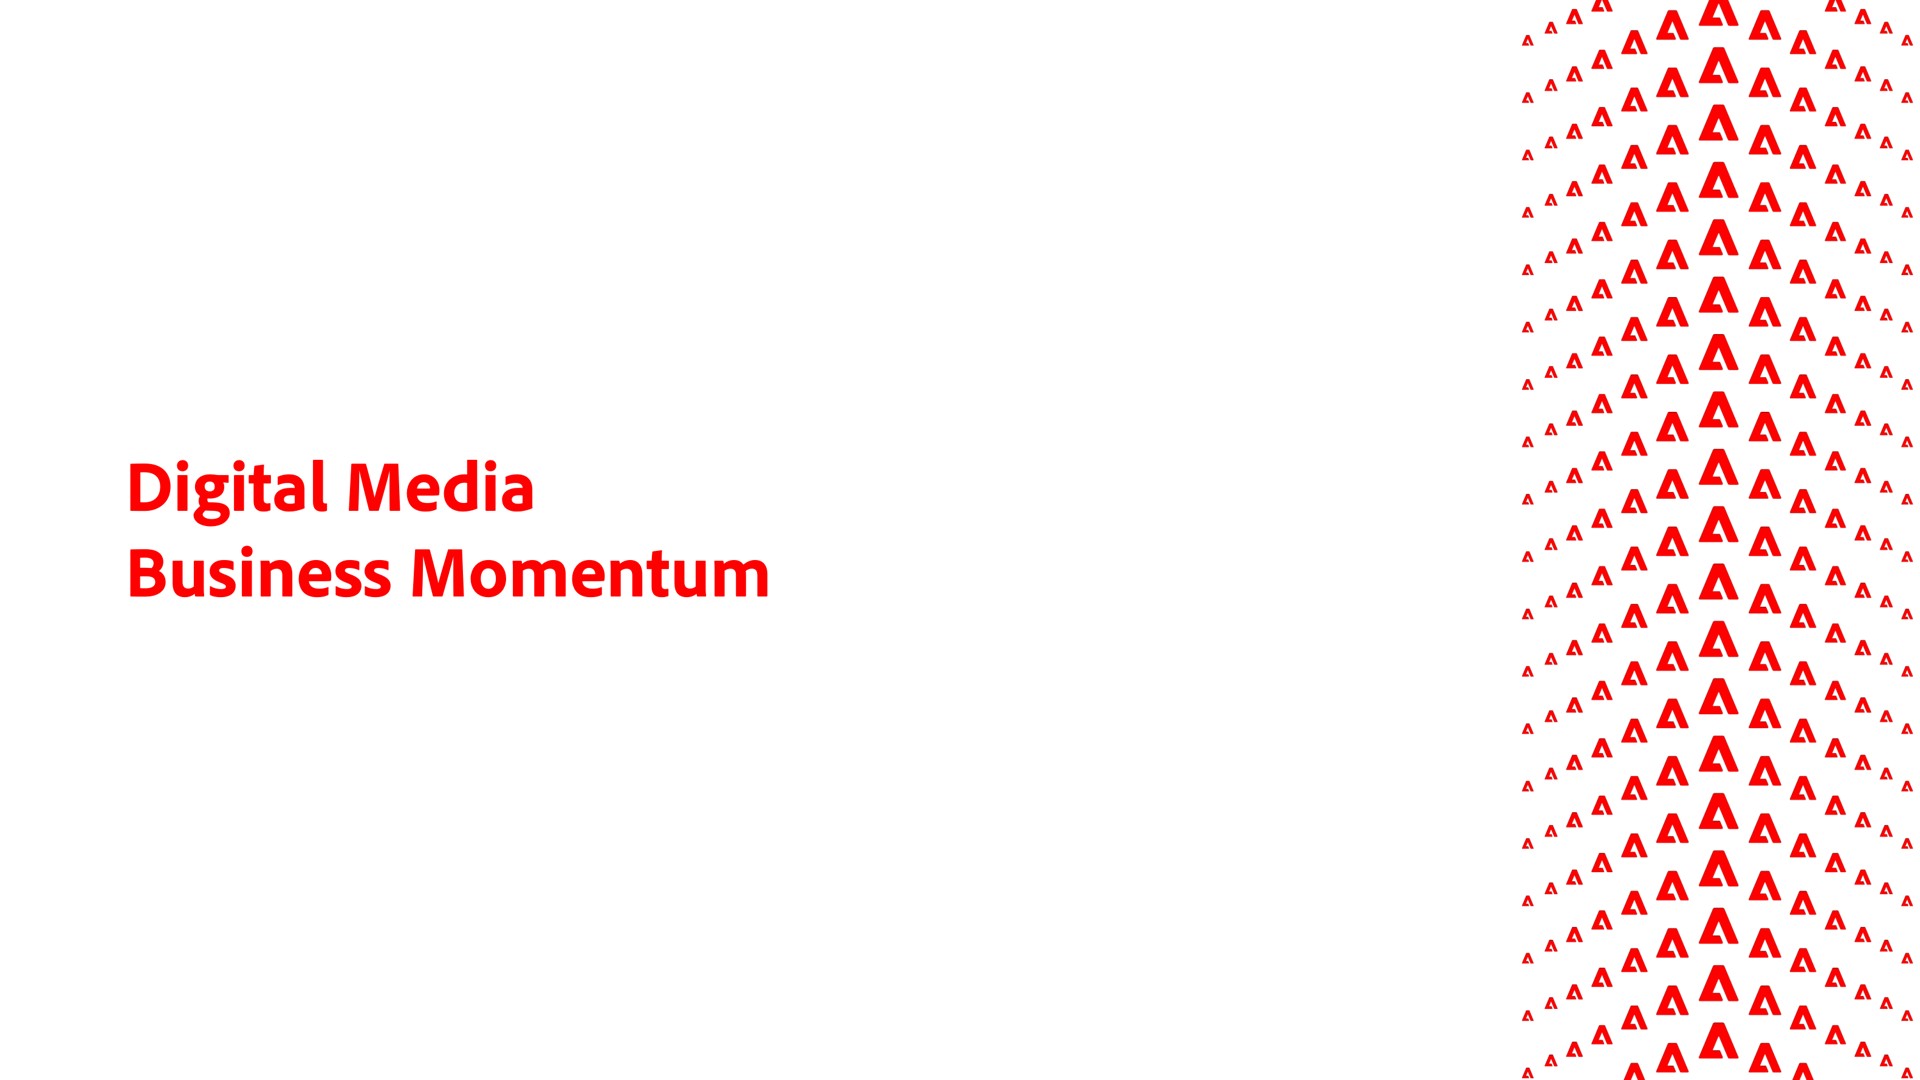 digital media business momentum ana aka aka aka ana aka aka aka aka aka ana aka aka aka aka ana aka | Adobe